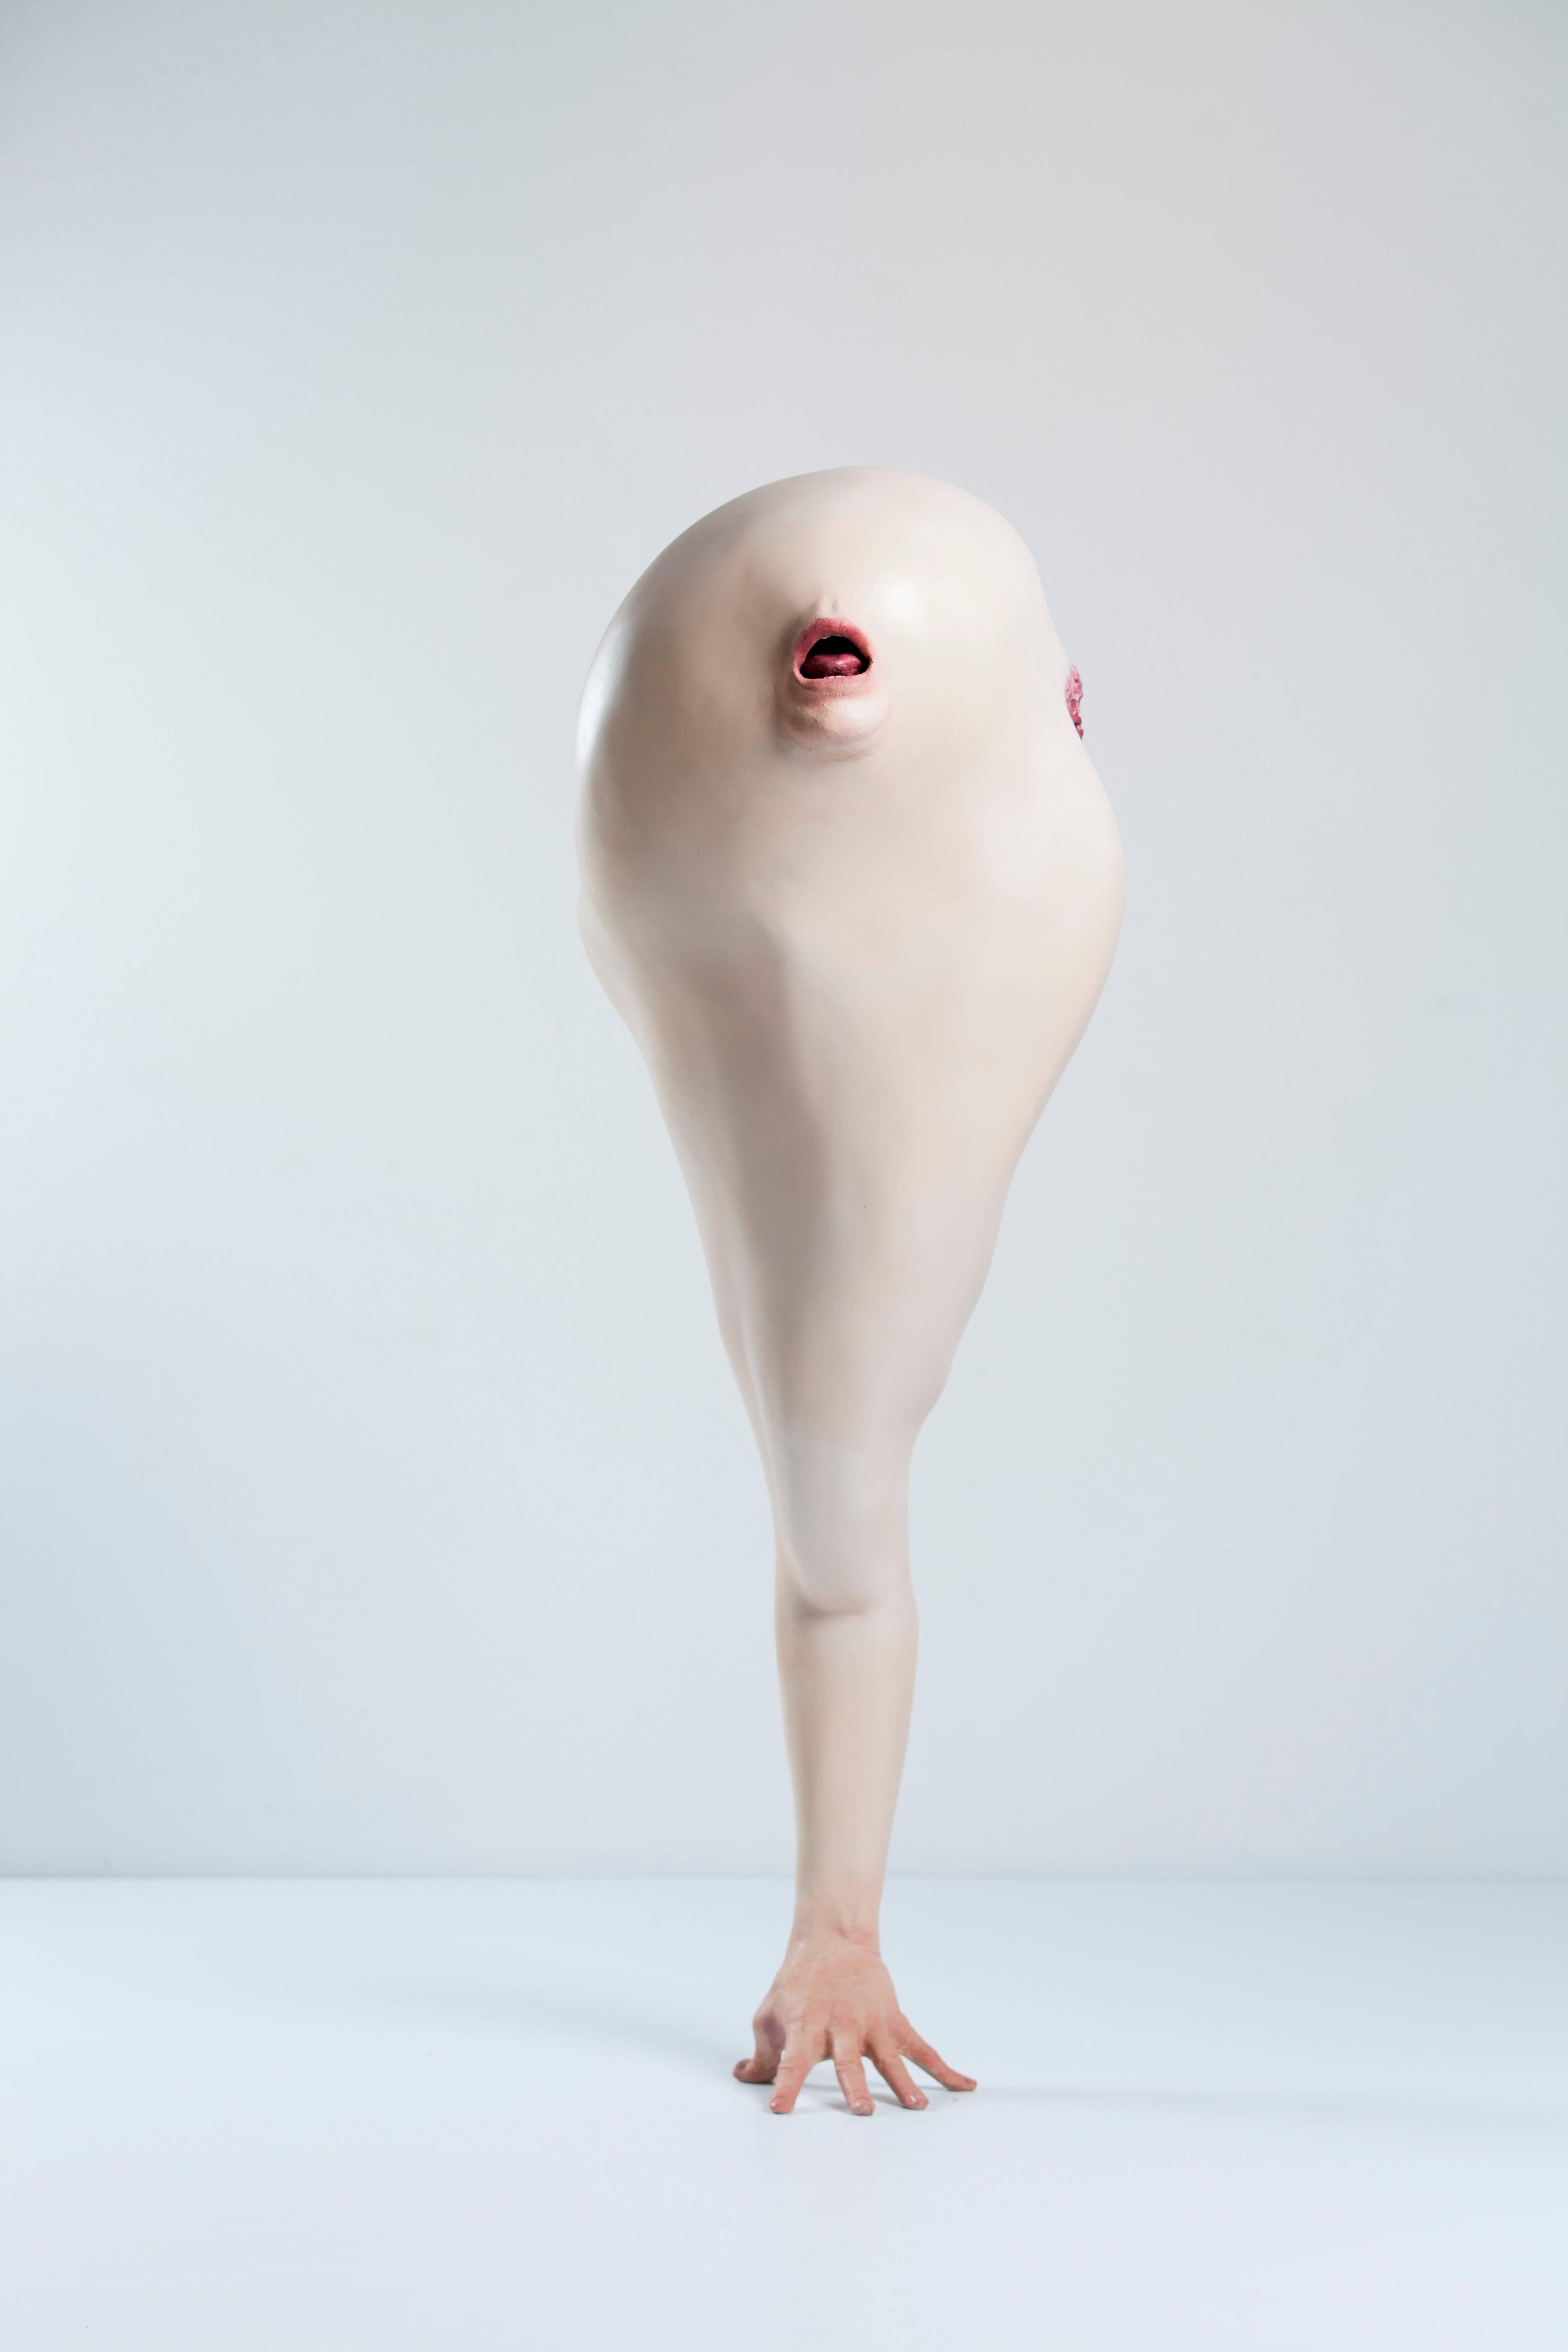 Bevan Ramsay Abstract Sculpture - Smörgåsbot